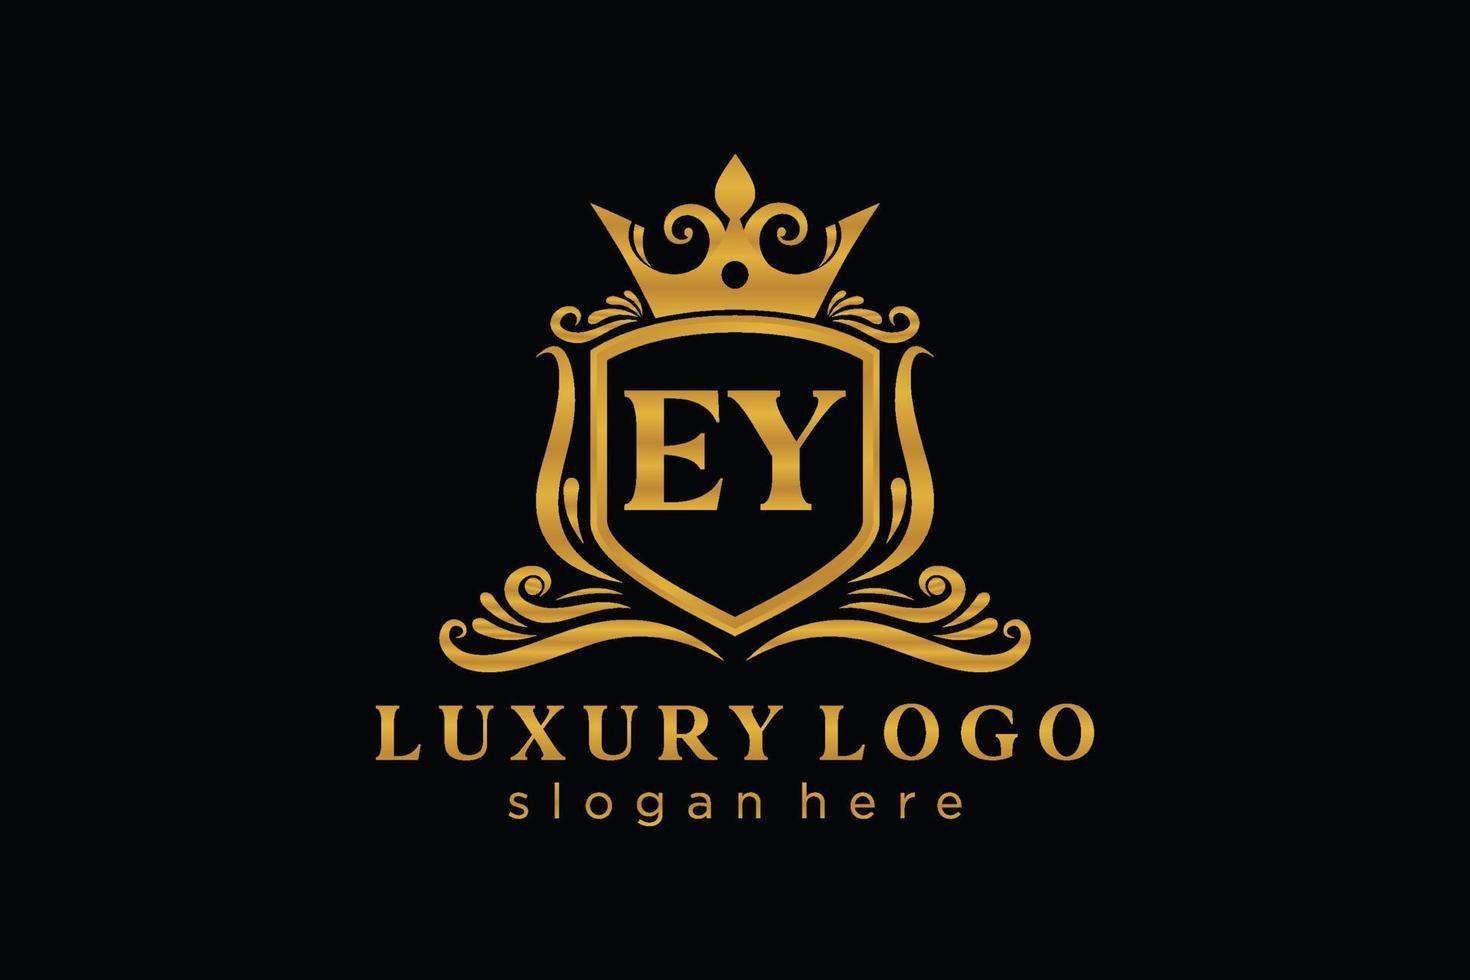 modelo de logotipo de luxo real inicial ey letter em arte vetorial para restaurante, realeza, boutique, café, hotel, heráldica, joias, moda e outras ilustrações vetoriais. vetor